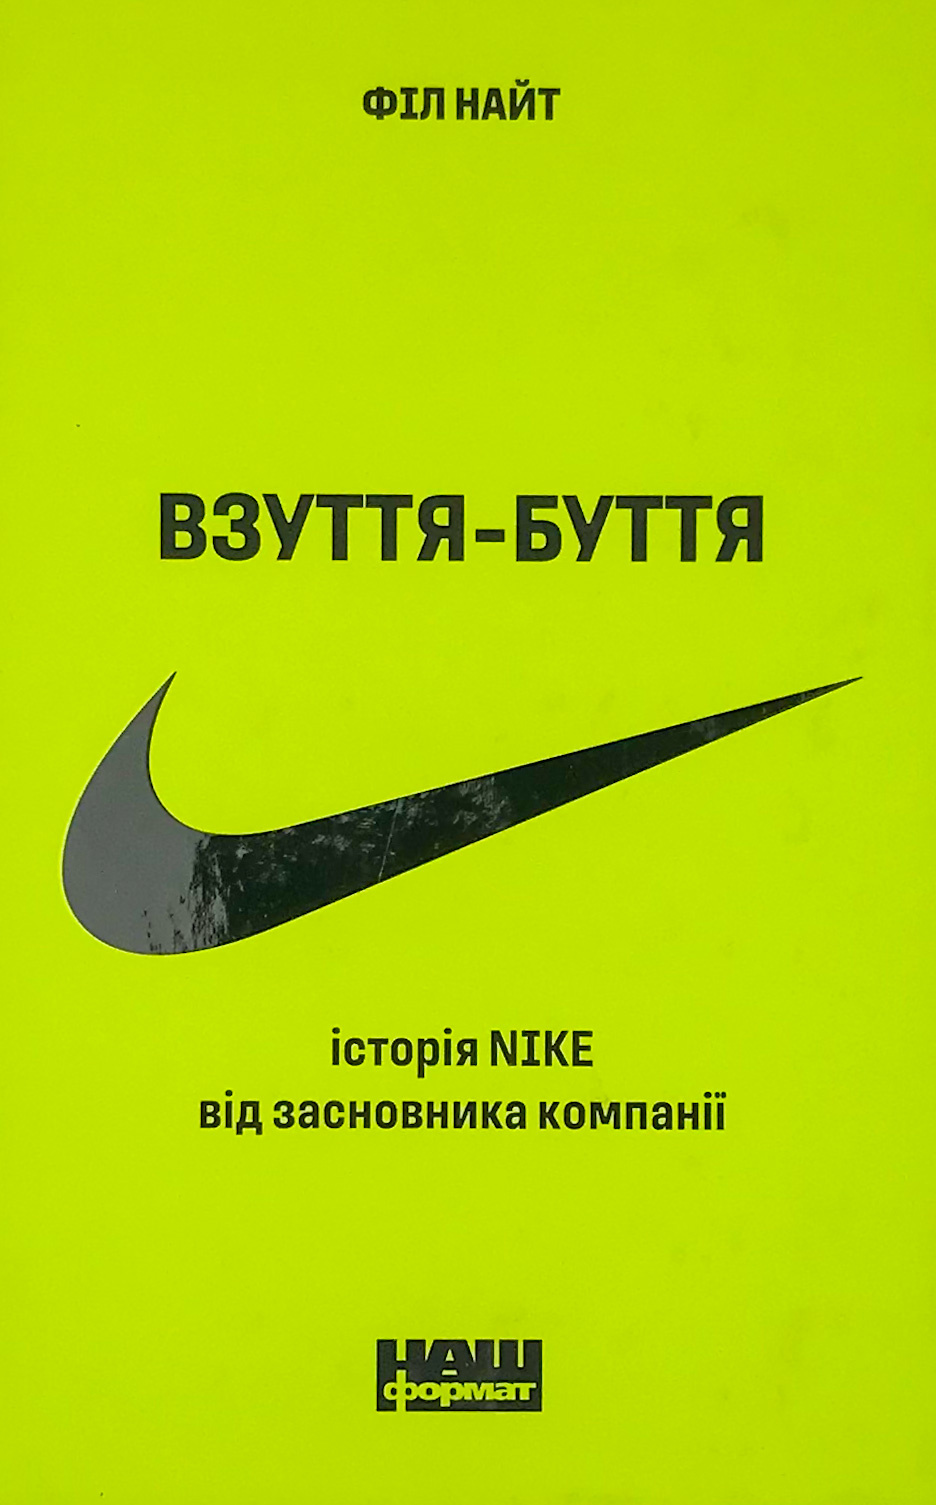 Взуття-буття. Історія Nike, розказана її засновником